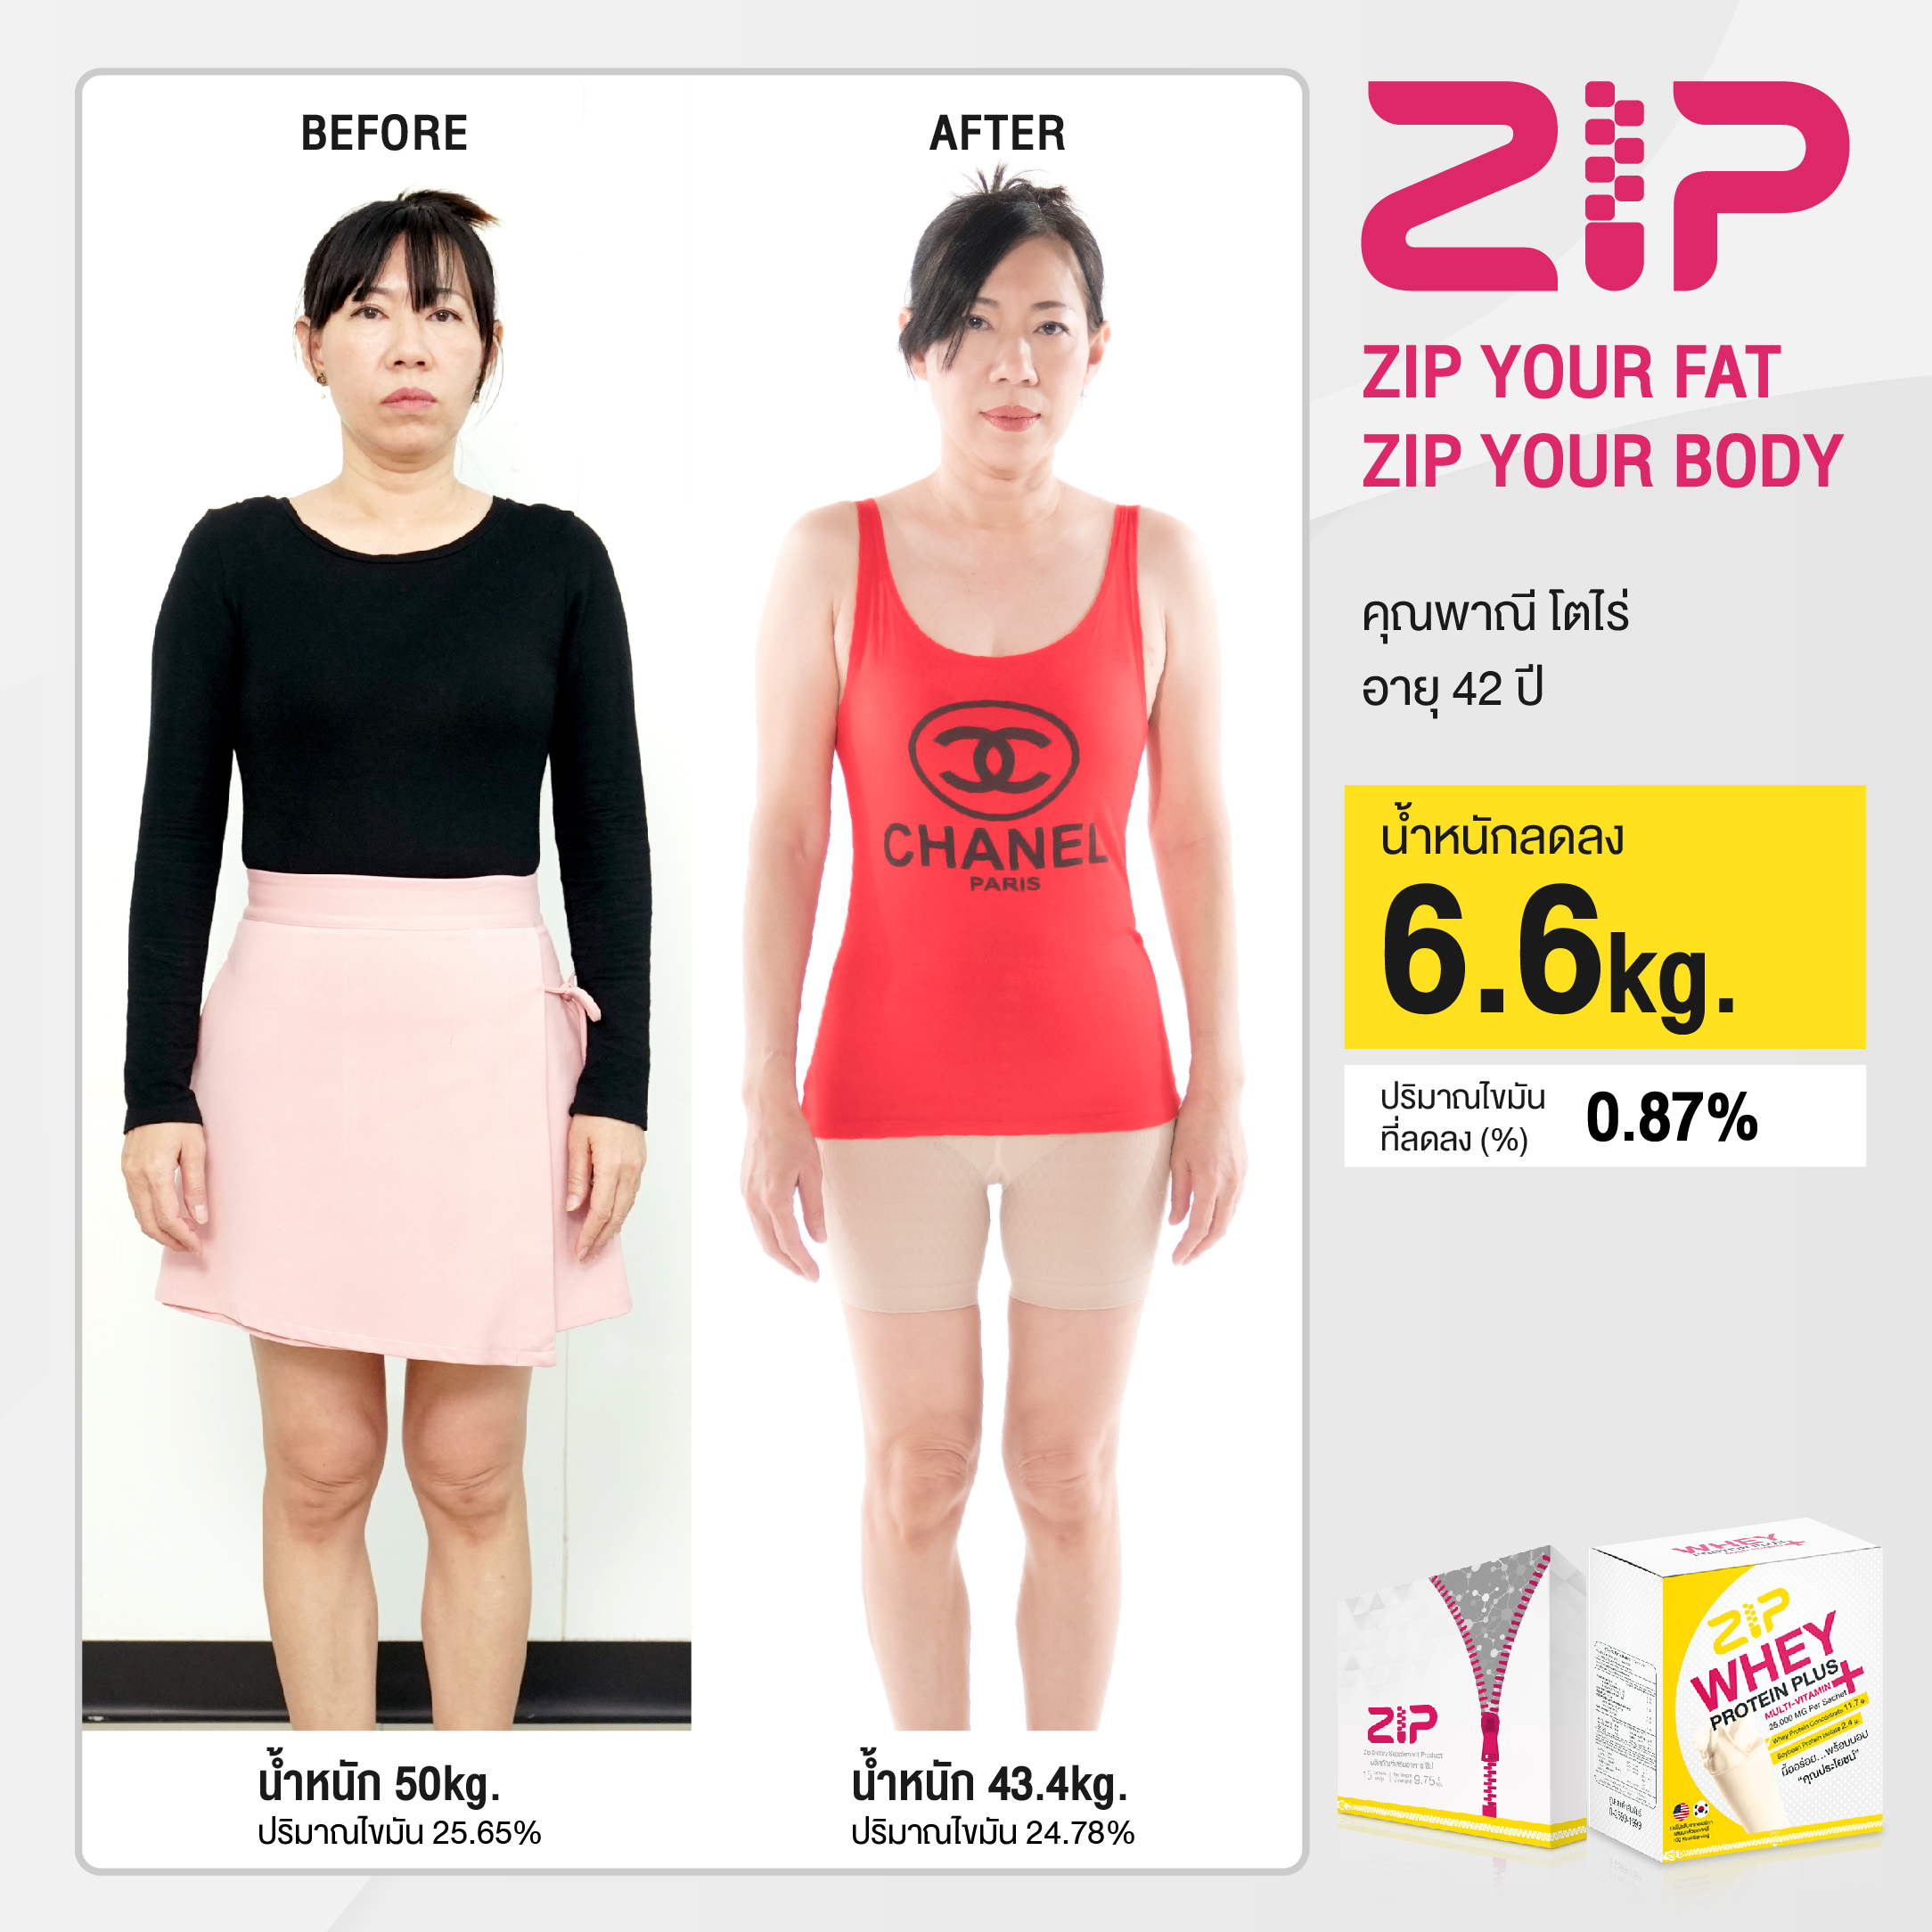 ZIP YOUR FAT